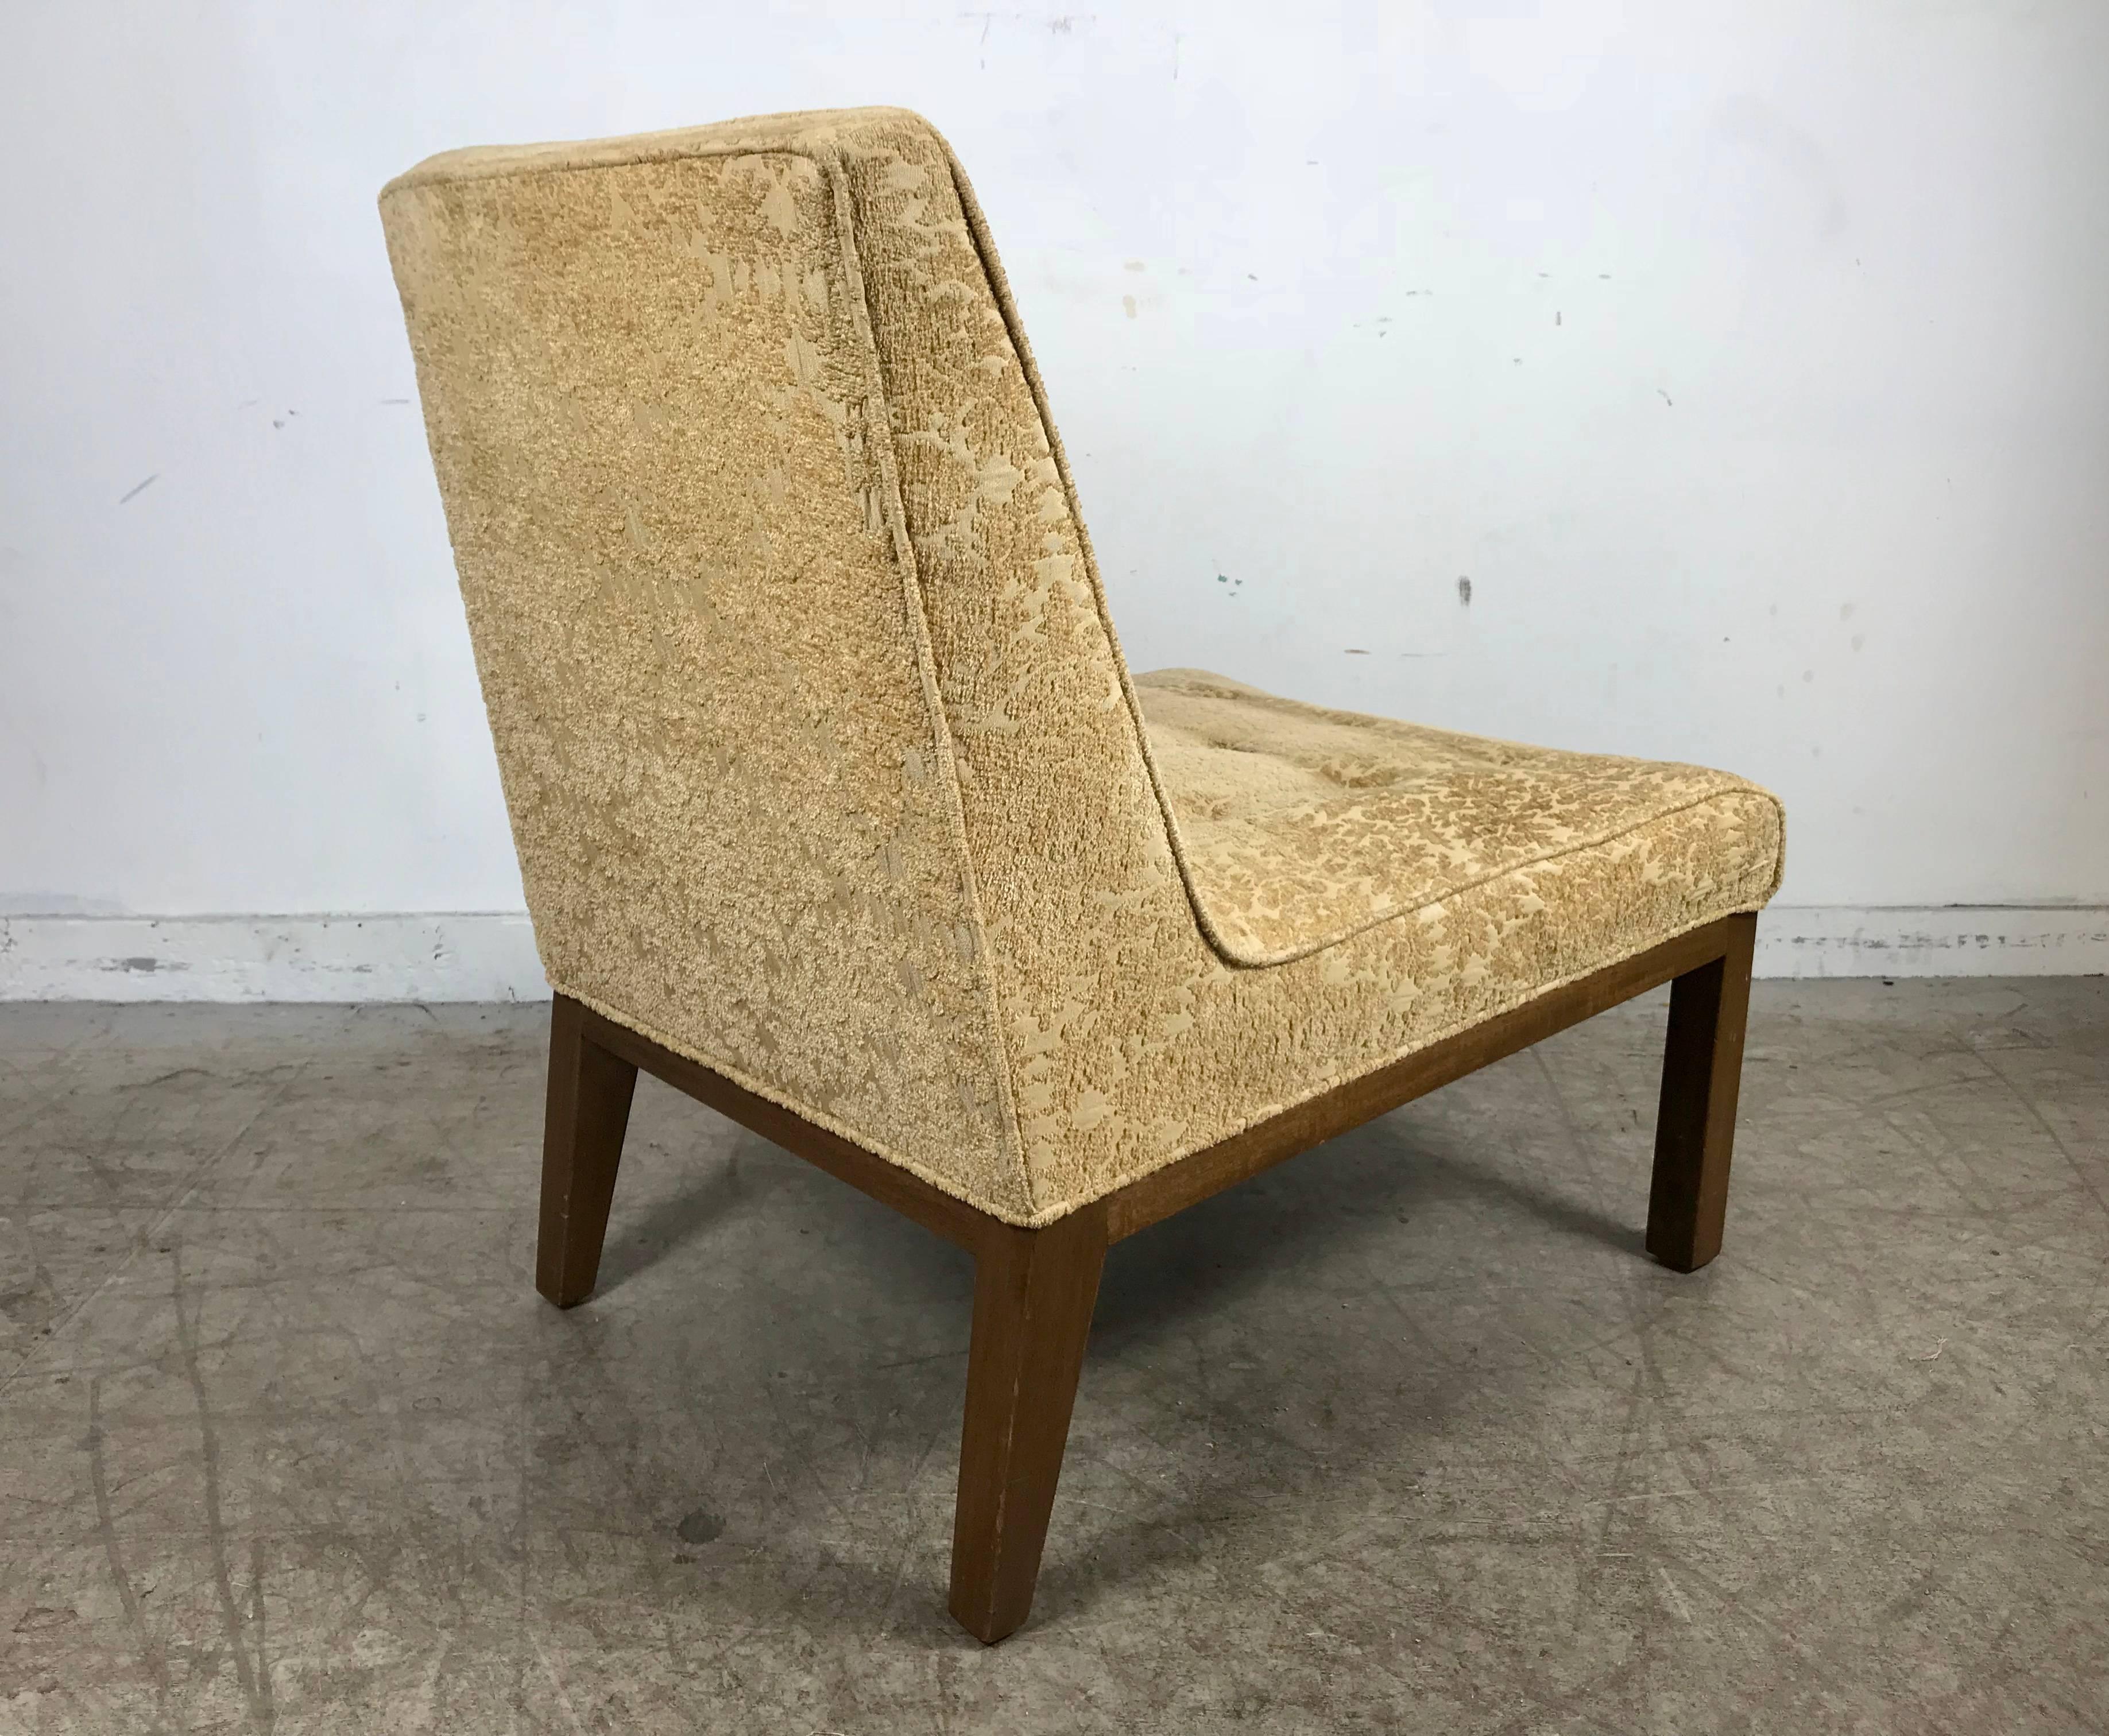 American Classic Modern Slipper Chair Designed by Edward Wormley for Dunbar